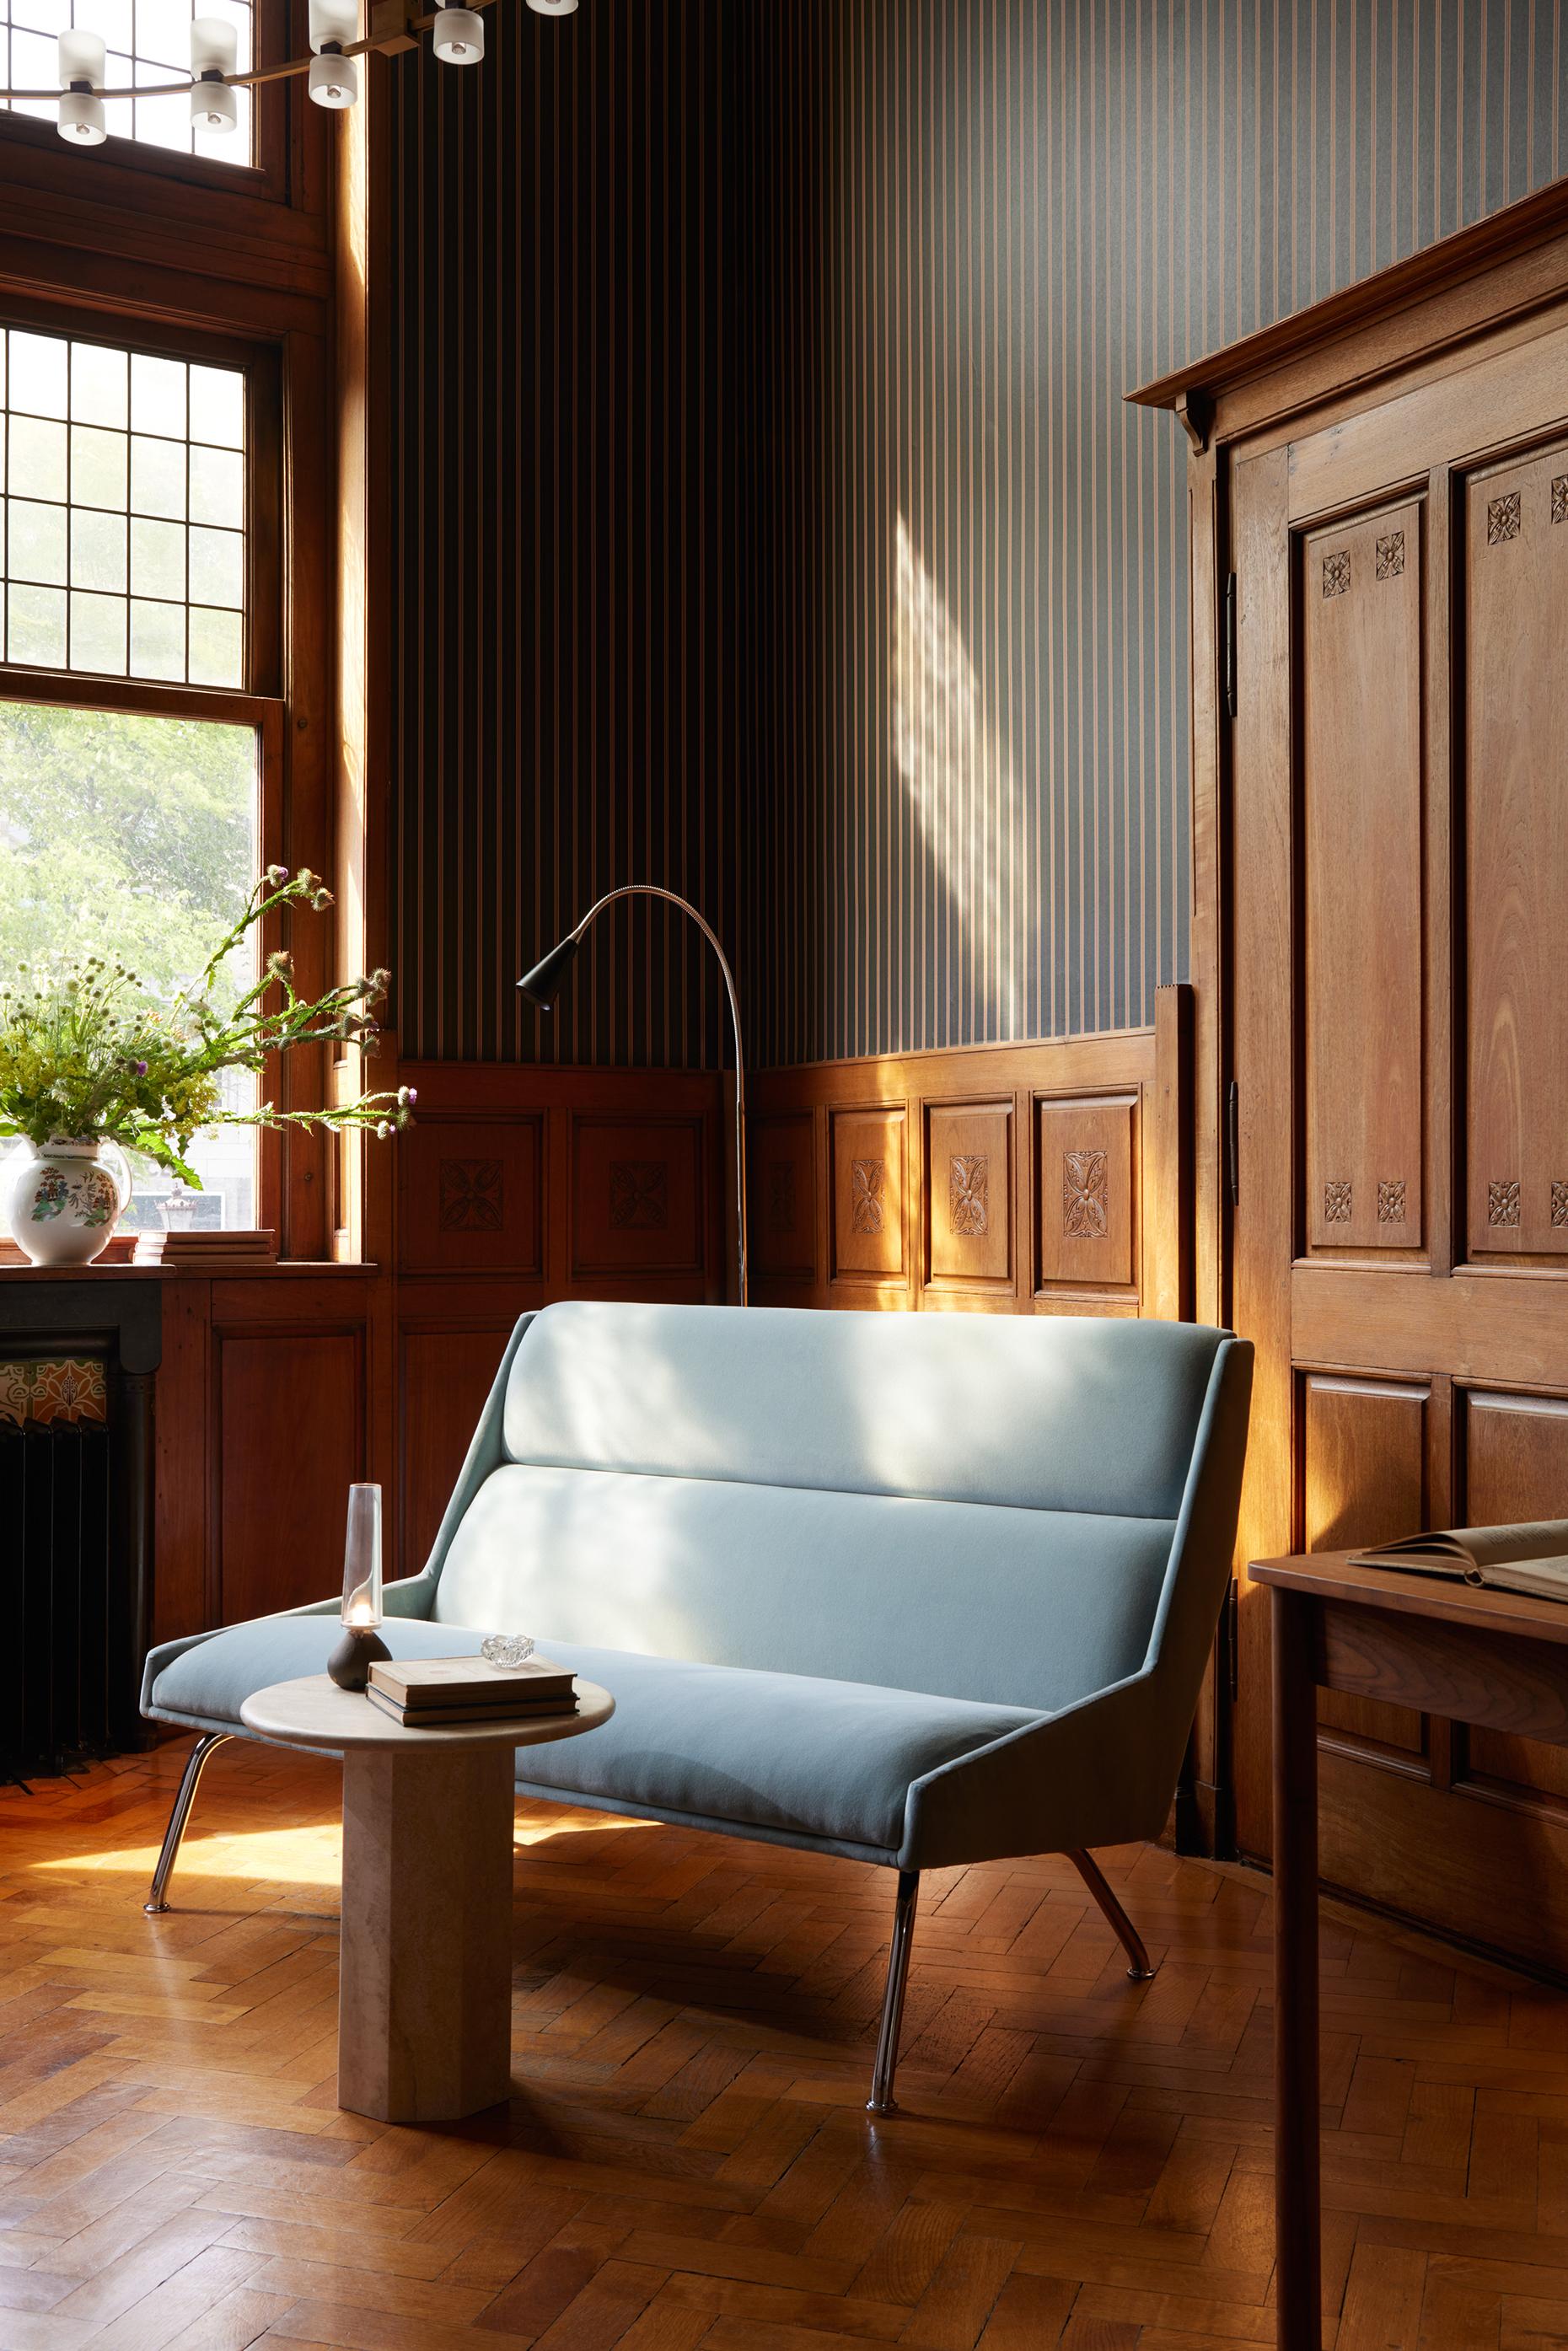 Der Sessel Kent ist ein Zeugnis der Kunstfertigkeit in Form und Verarbeitung. Er verkörpert eine elegante Silhouette, die von den ikonischen Elementen des italienischen Designs der 1950er Jahre inspiriert ist, darunter die kantigen Linien des